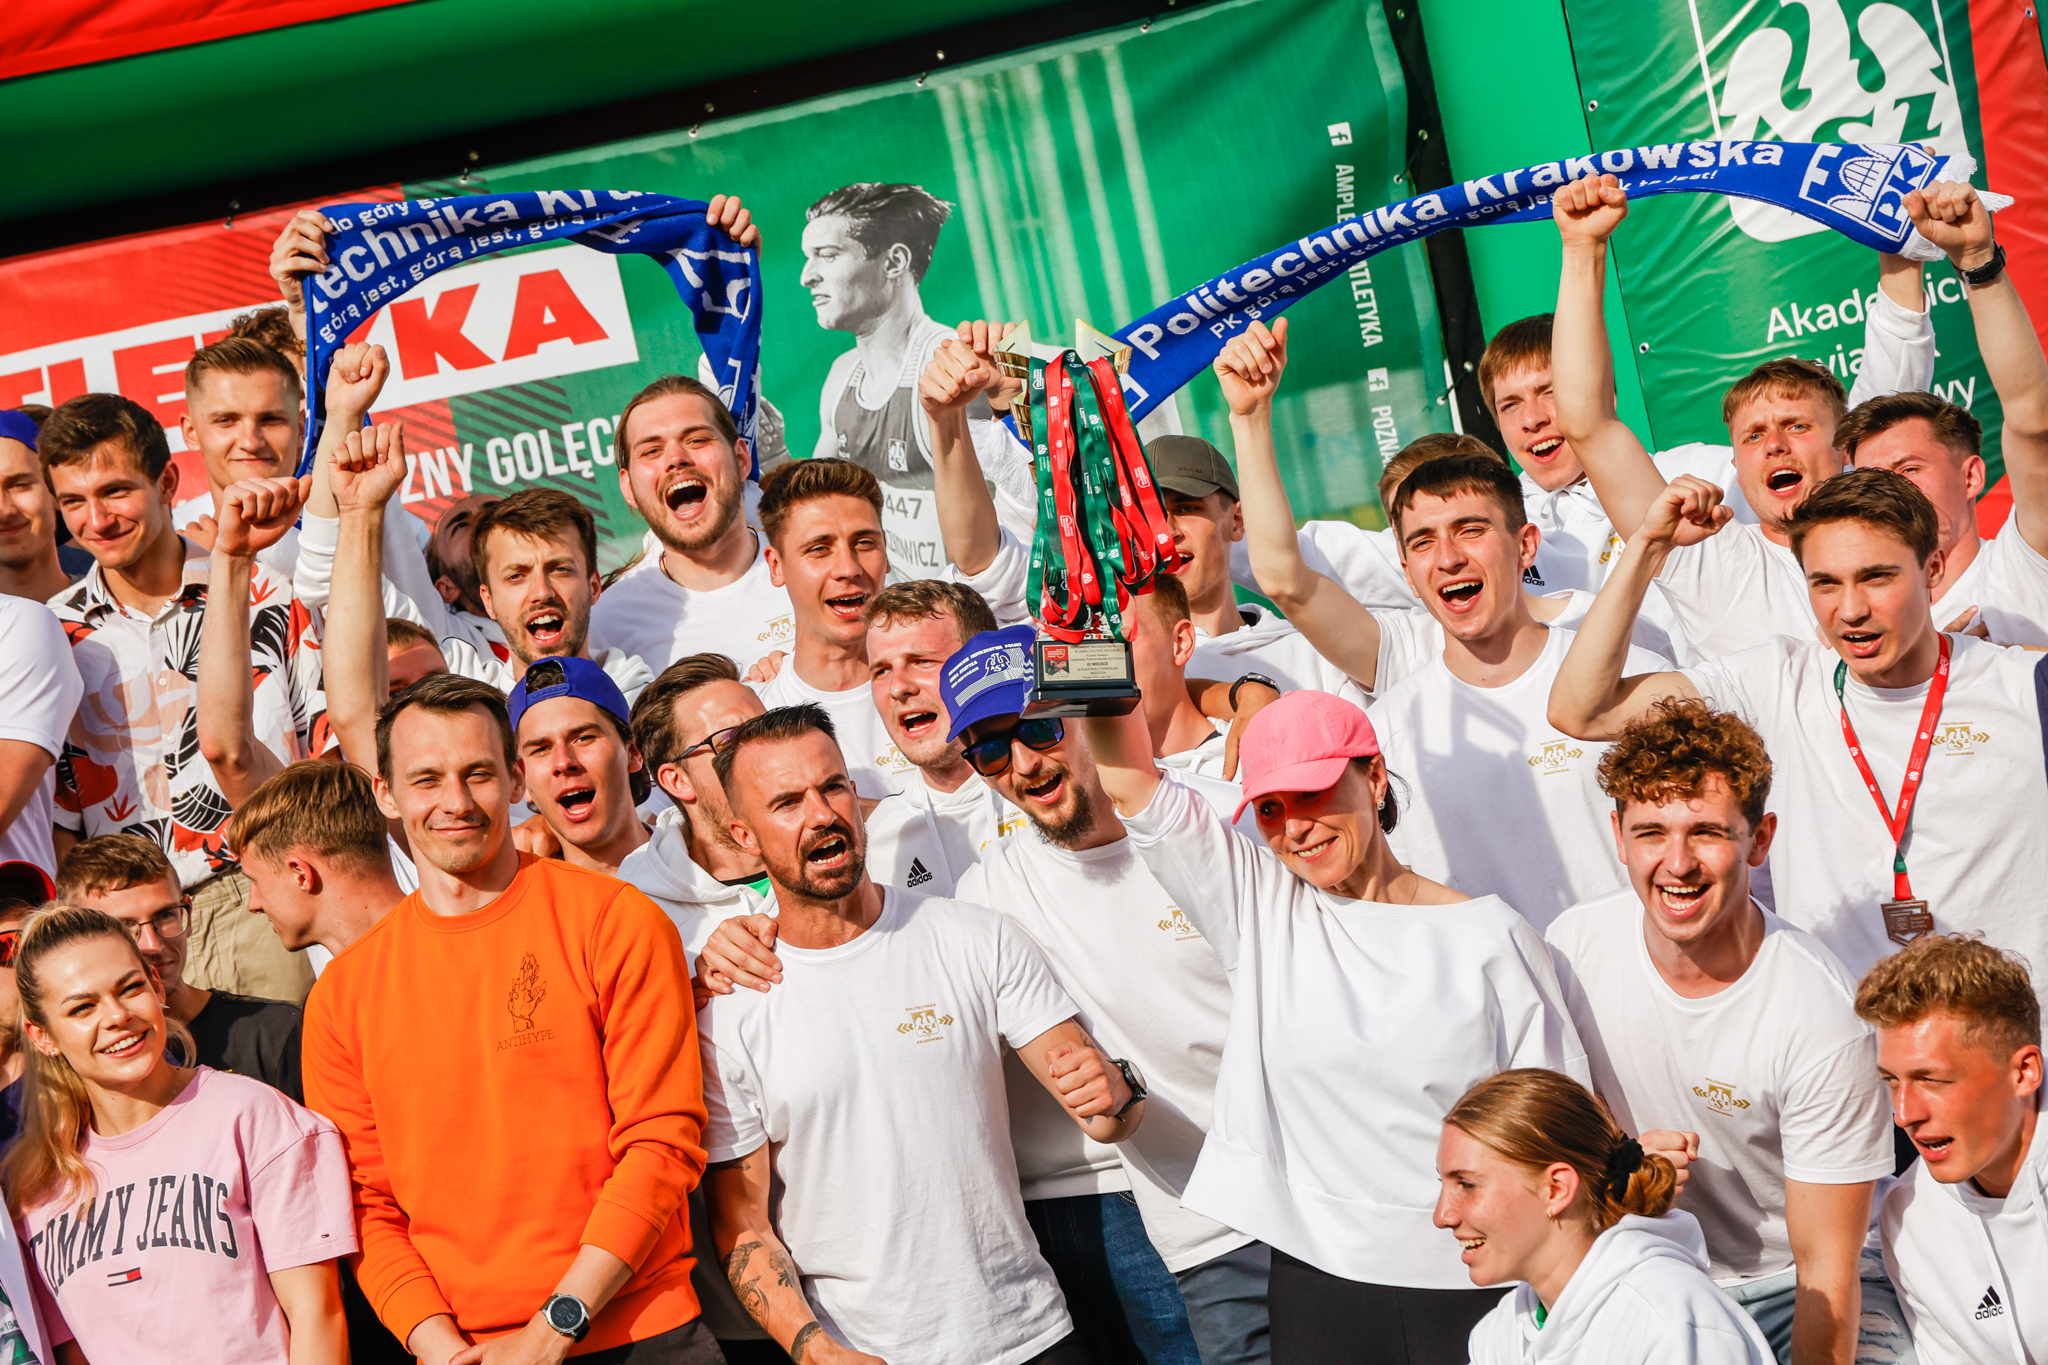 Grupa radosnych młodych ludzi wznosi w górę medale i szaliki z napisem "Politechnika Krakowska, górą jest"